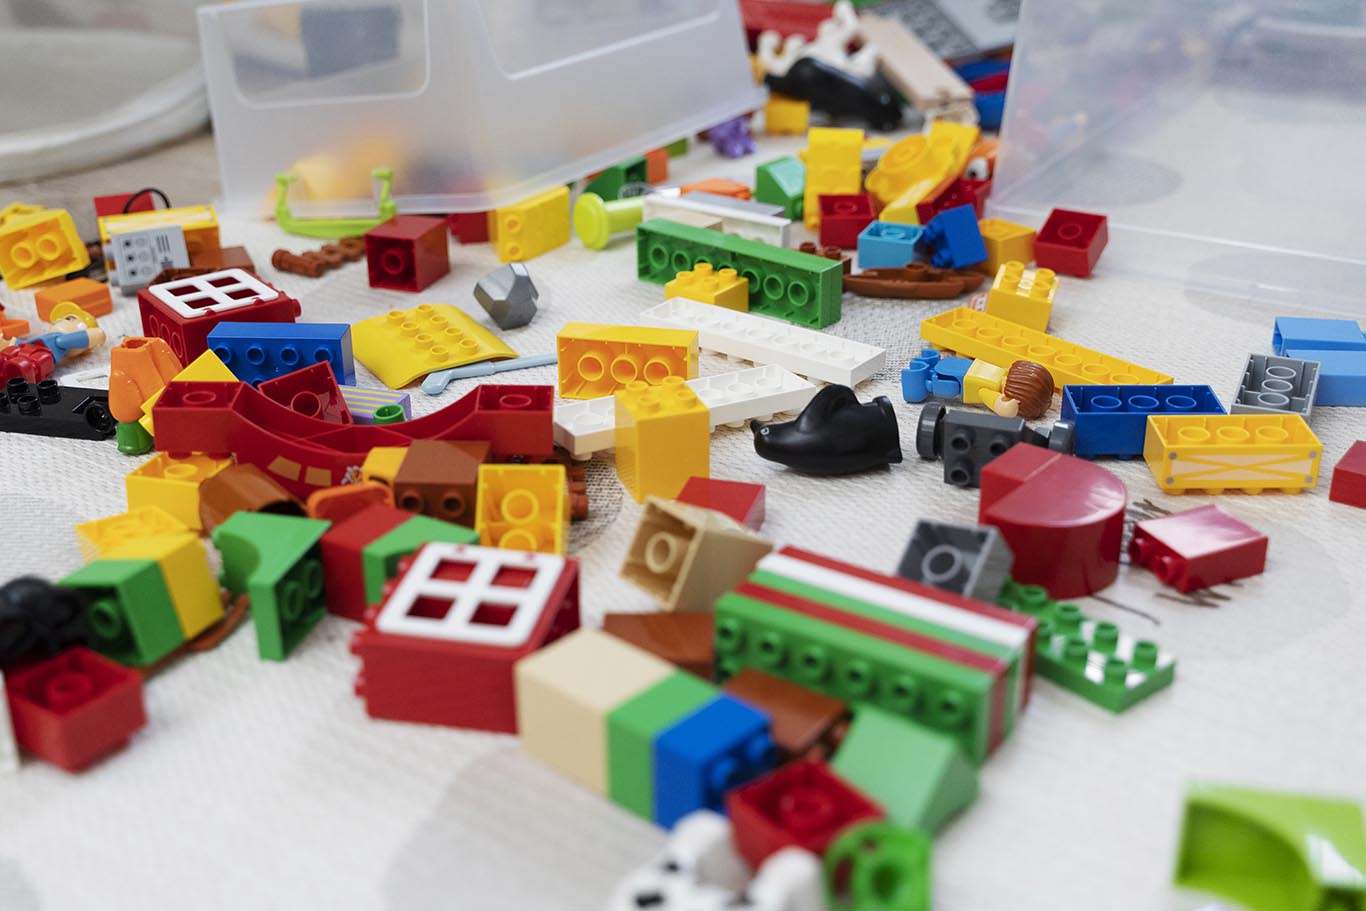 War Room habla de los beneficios de LEGO SERIOUS PLAY